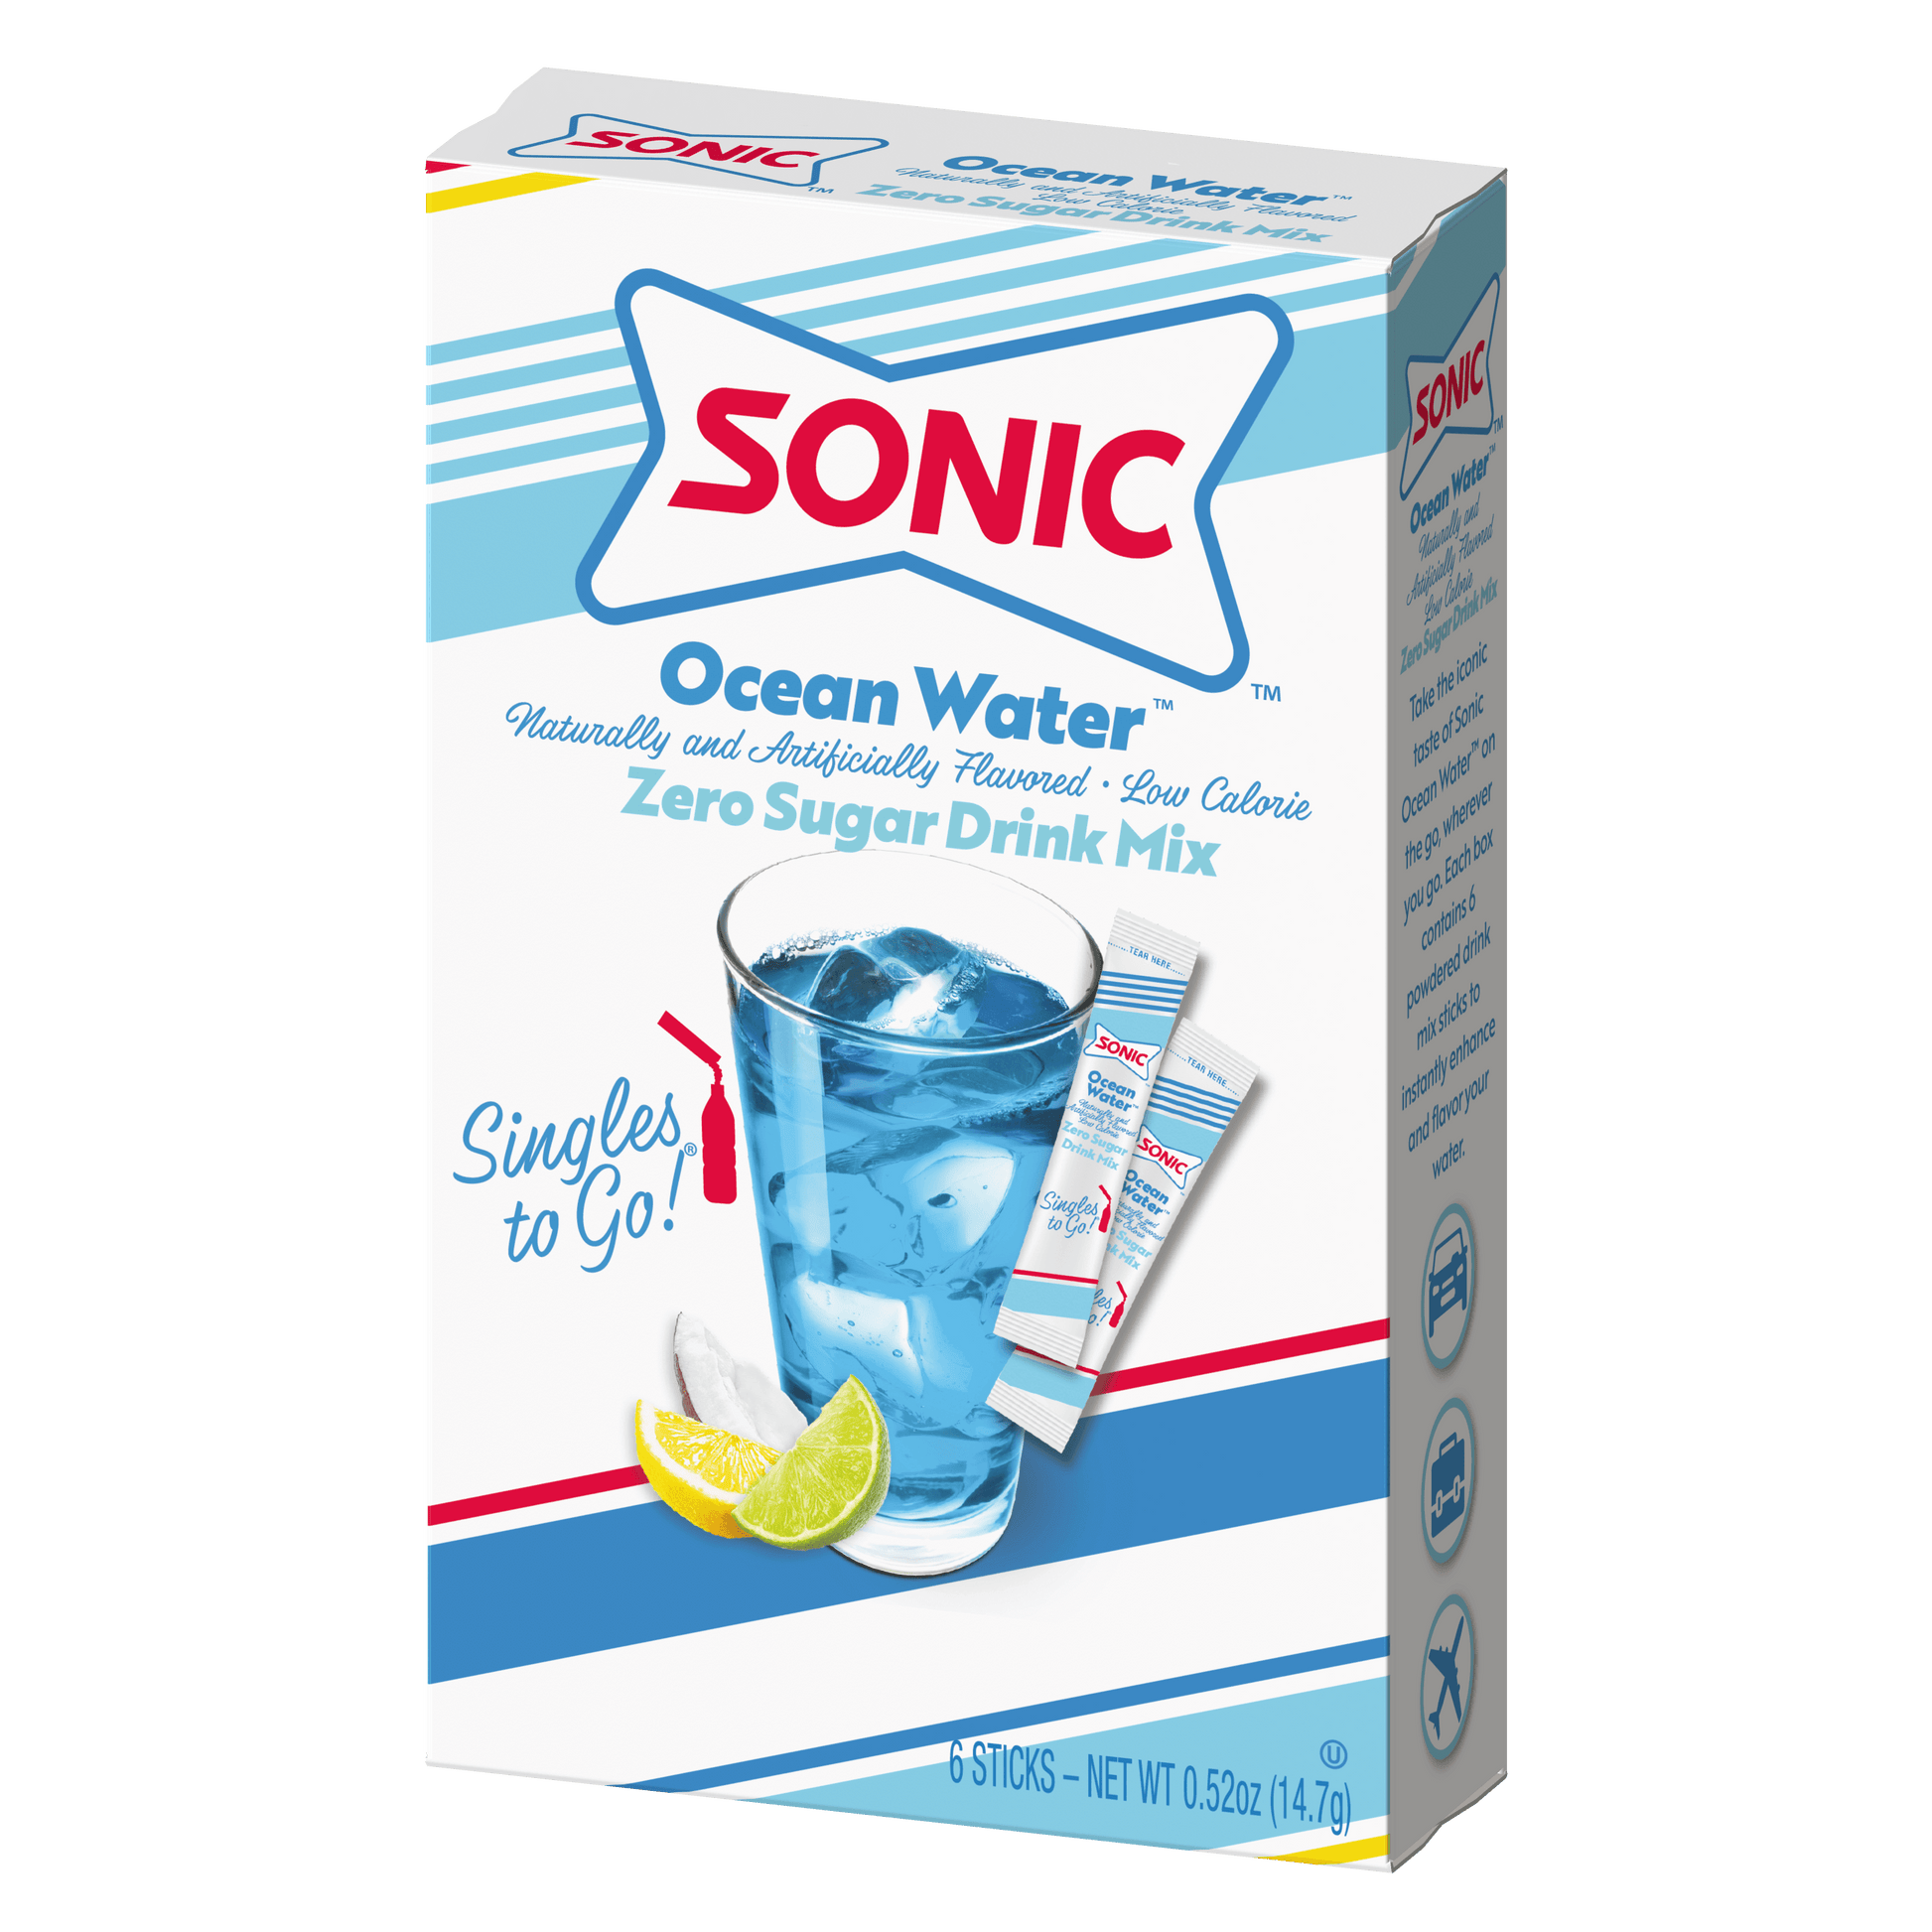 Sonic ocean water singles to go packaging